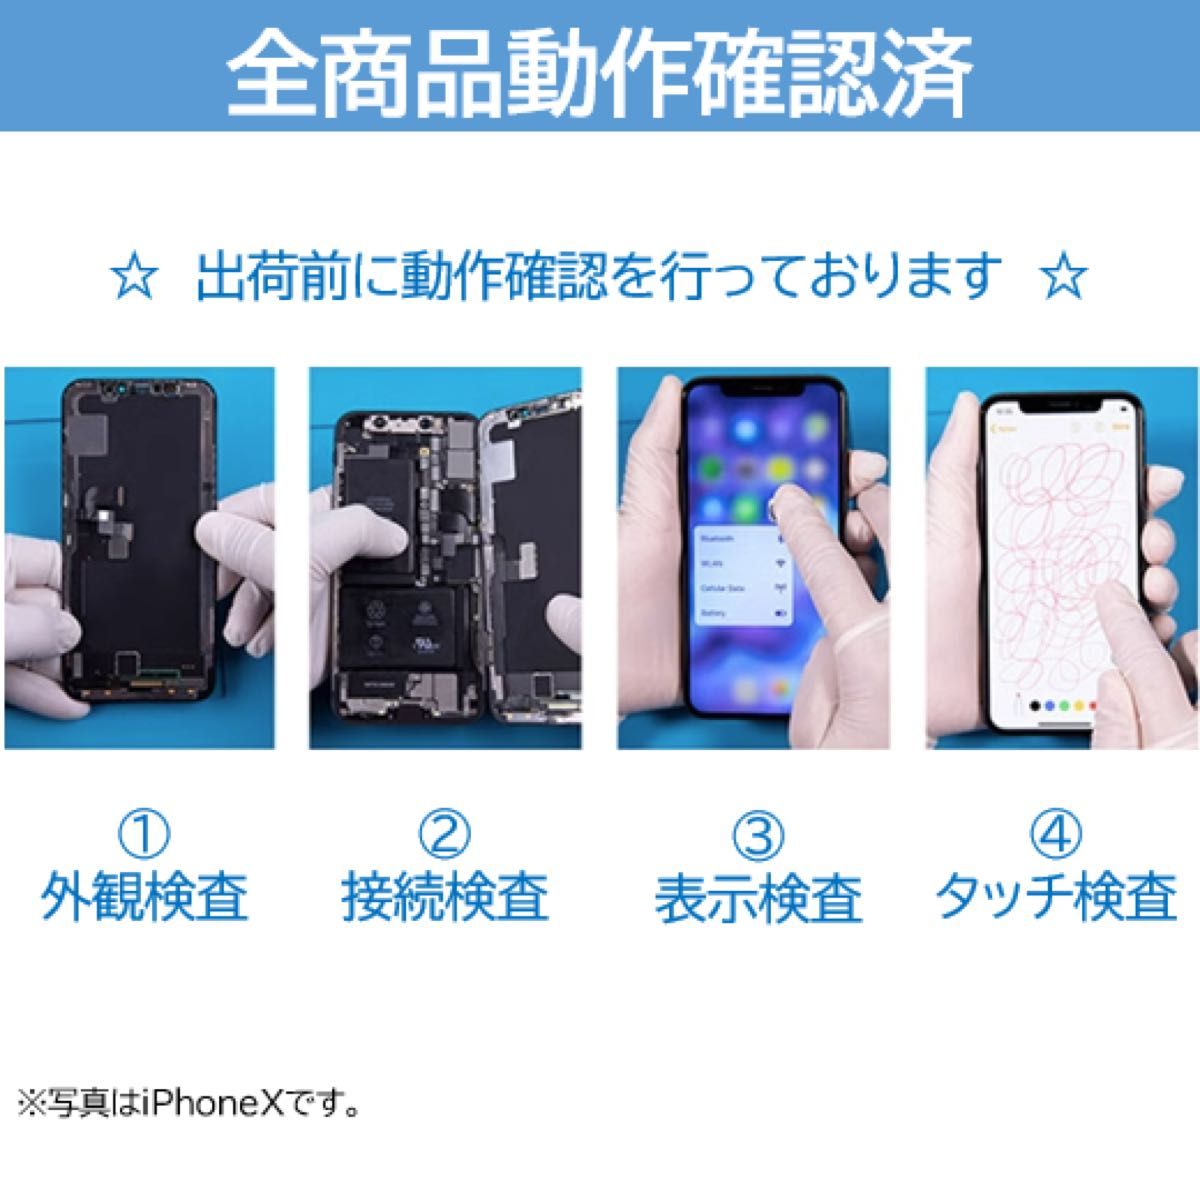 【新品】iPhone6S黒 液晶フロントパネル 画面修理交換用 工具付